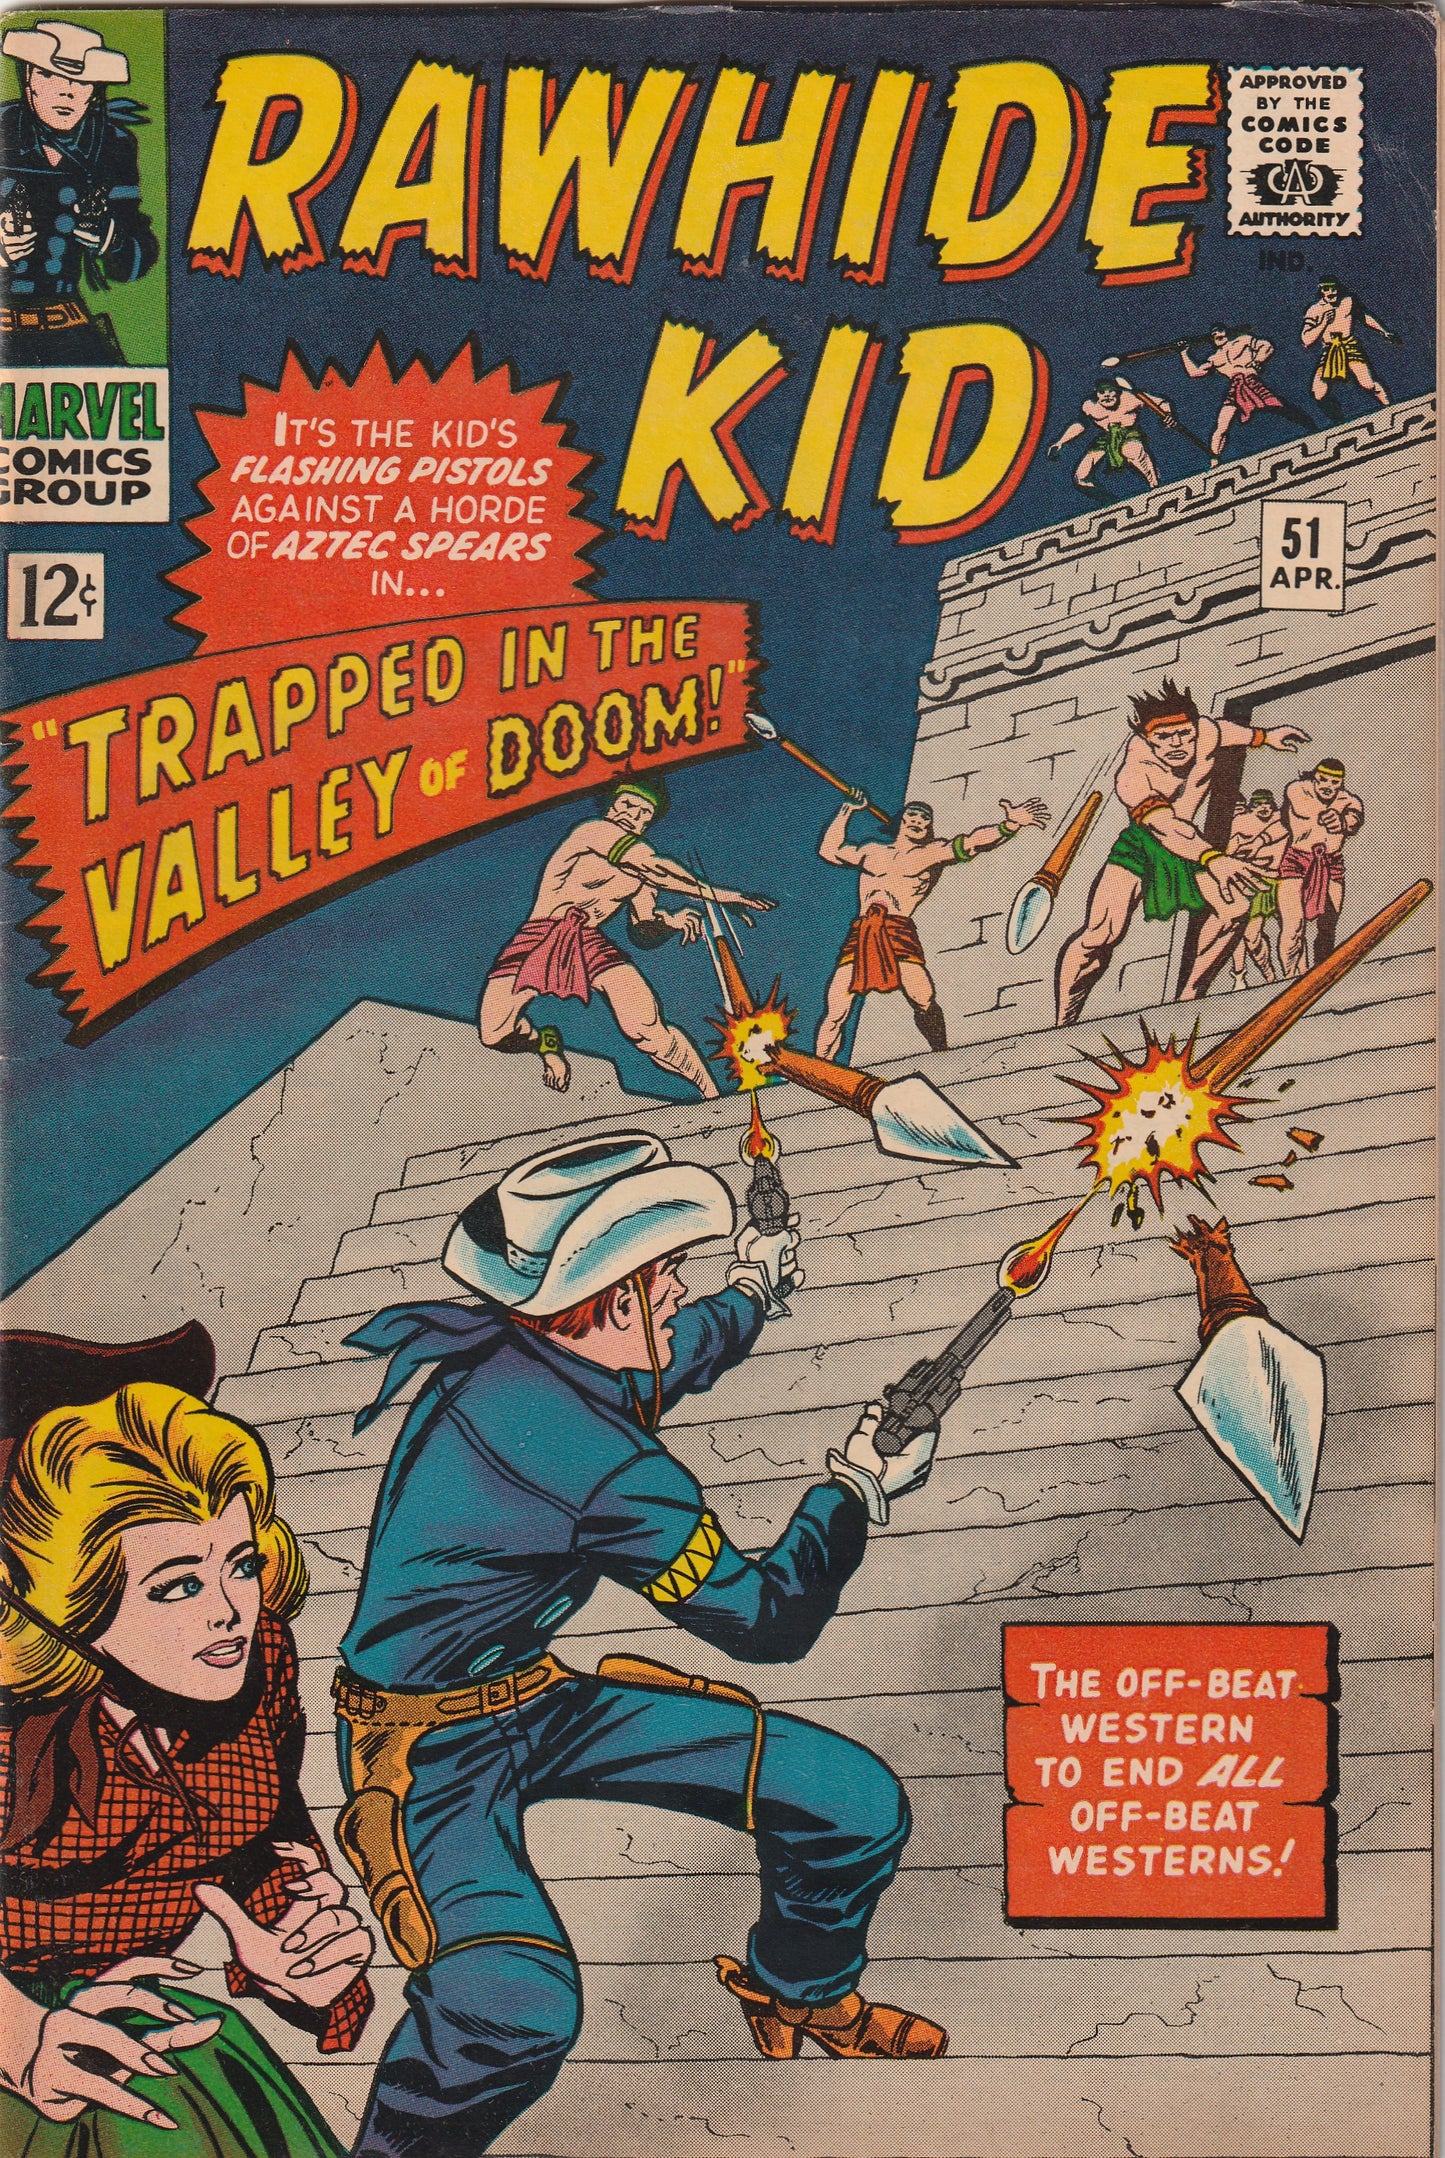 Rawhide Kid #51 (1966)